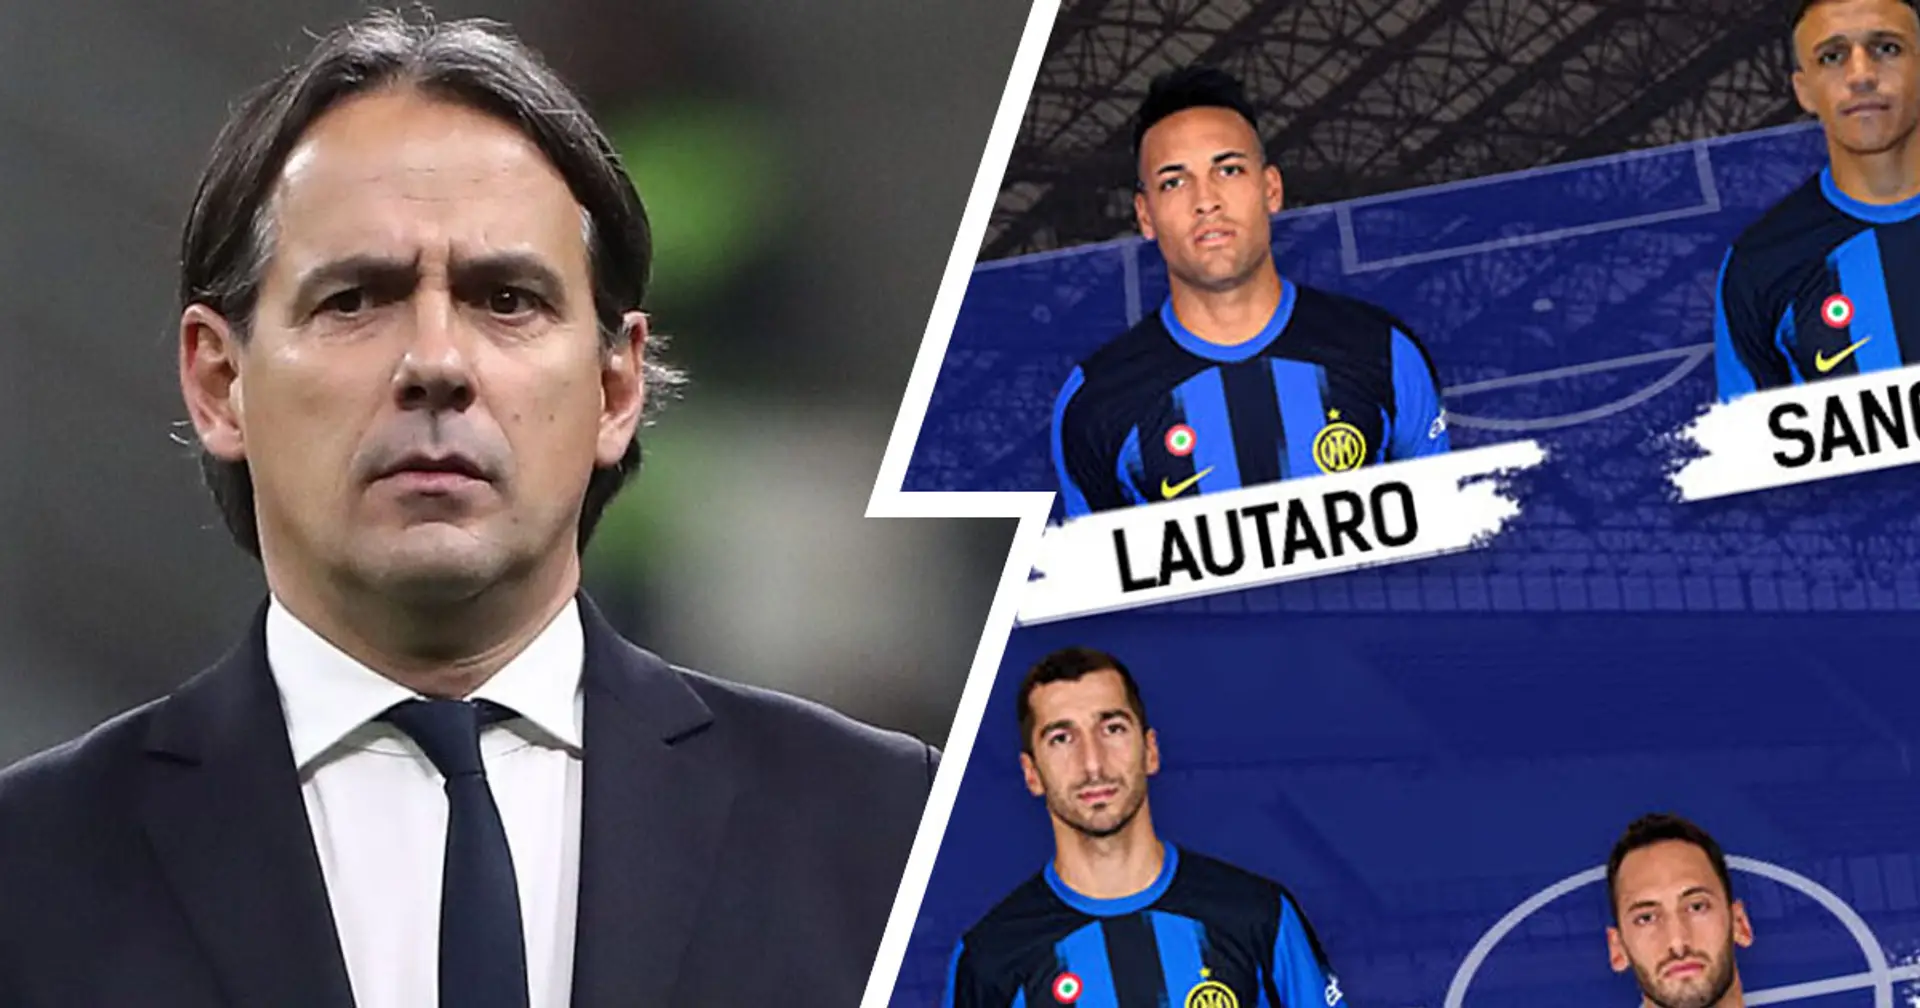 Lautaro in attacco, 4 dubbi da sciogliere: Sassuolo vs Inter, probabili formazioni e ultime notizie